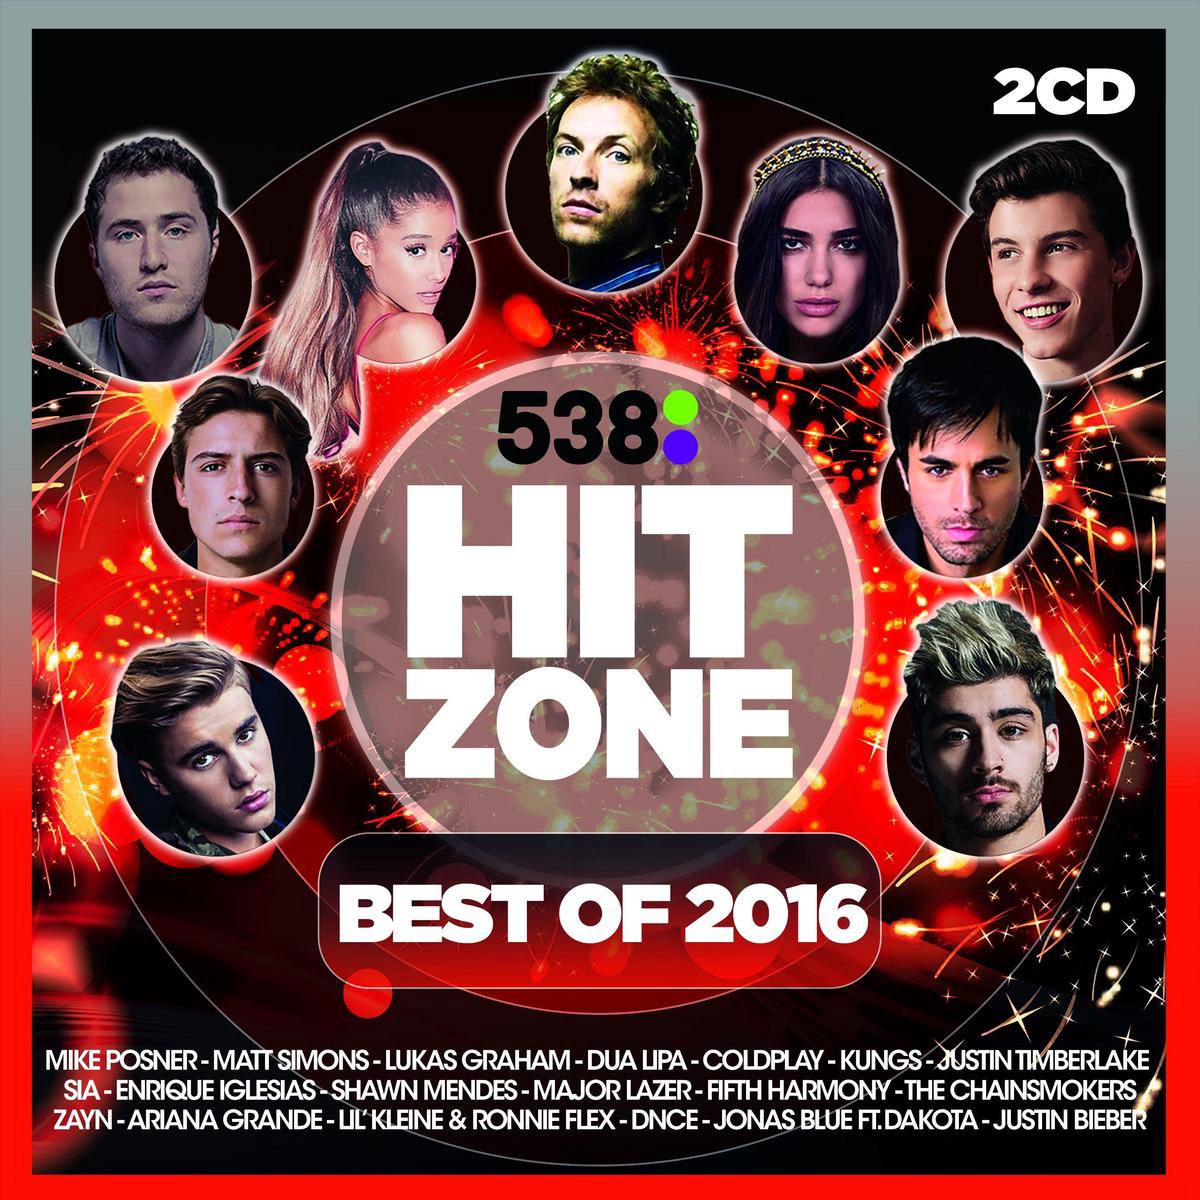 Doorzichtig Briesje Kort geleden Various - 538 Hitzone - Best Of 2016, various artists | CD (album) | Muziek  | bol.com